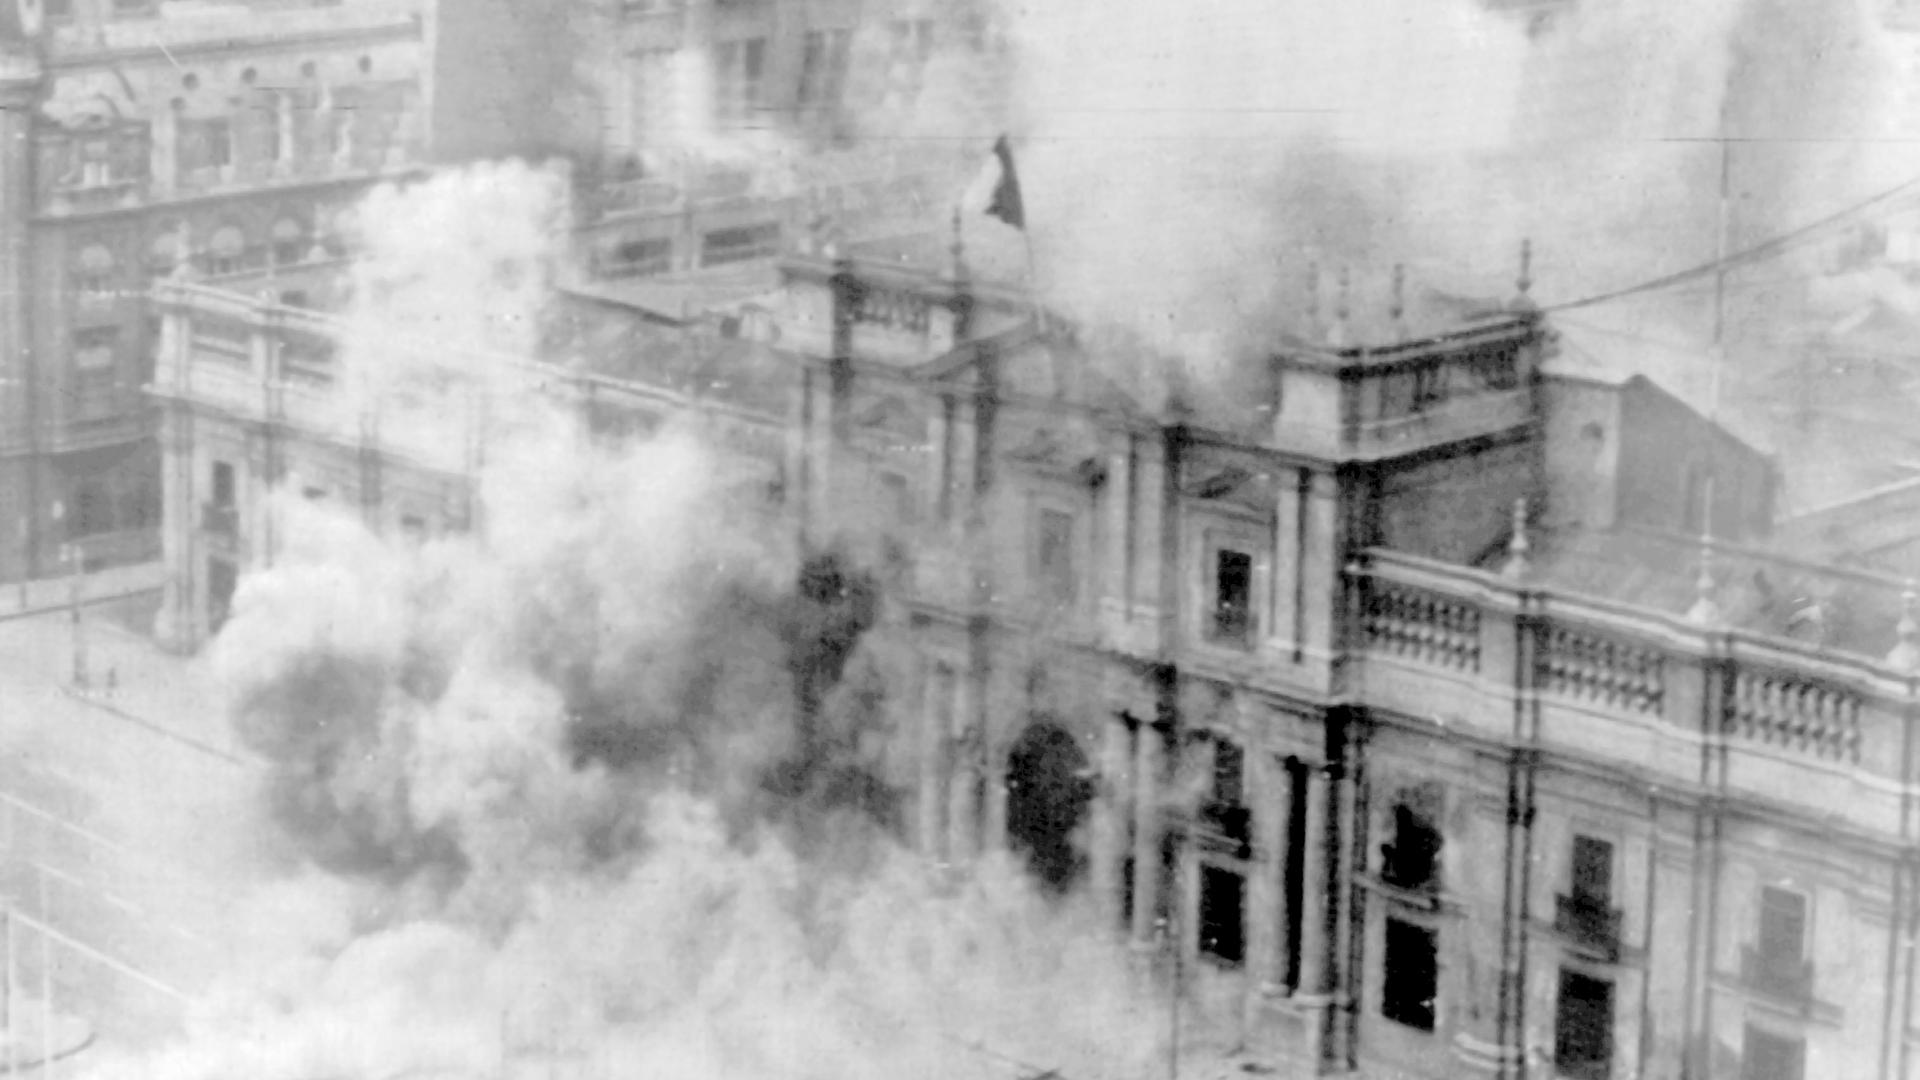 Blick auf das brennende Gebäude des Präsidenten Palasts. Bei der Erstürmung des Moneda-Palastes in der chilenischen Hauptstadt Santiago de Chile am 11. September 1973 durch putschende Militärs kam der gewählte Staatspräsident Salvador Allende Gossens ums Leben. 